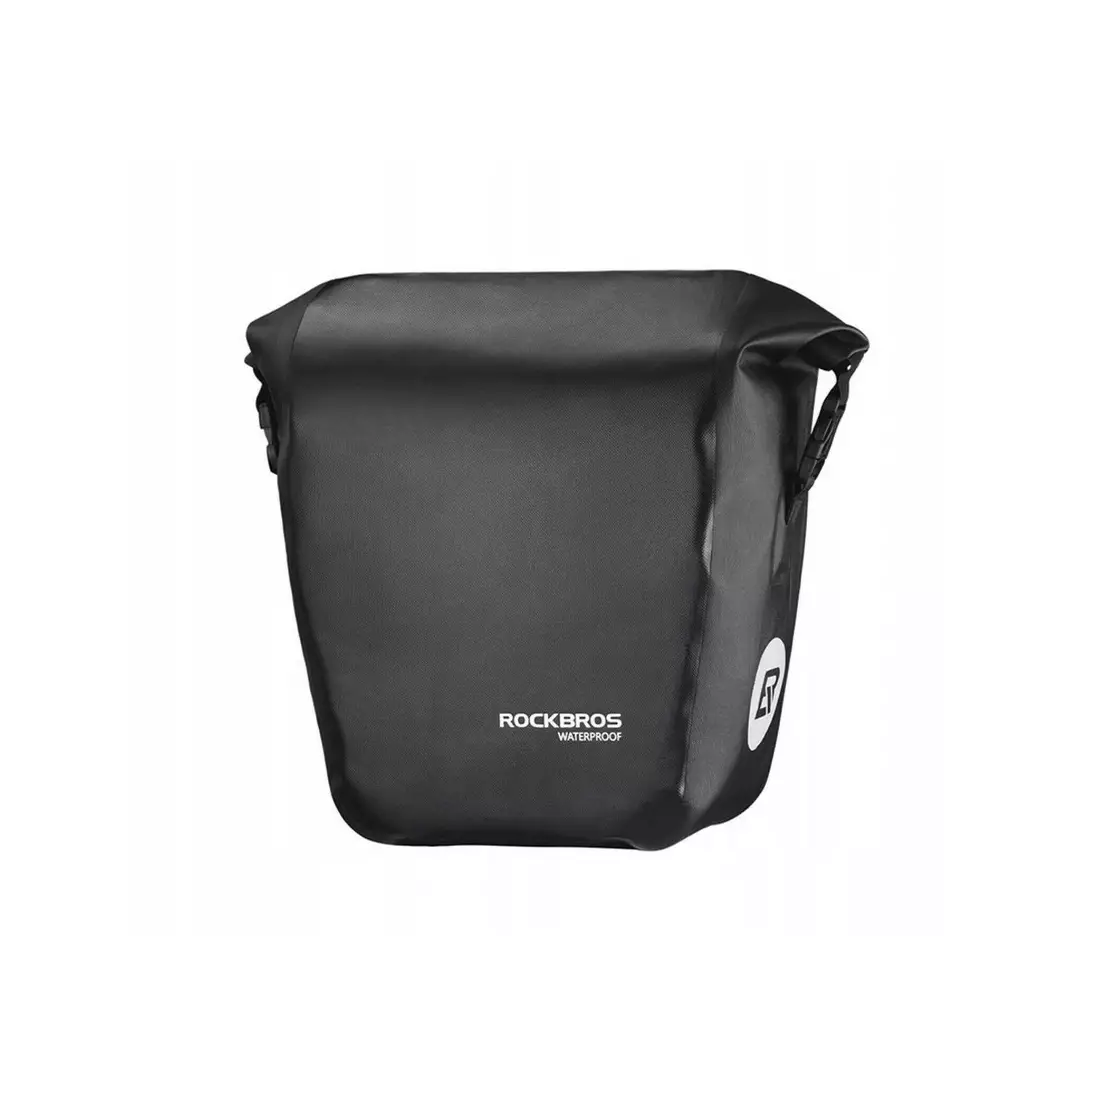 Rockbros boční taška na zavazadla, jednoduchá, složená 14l Černá AS-003-1BK